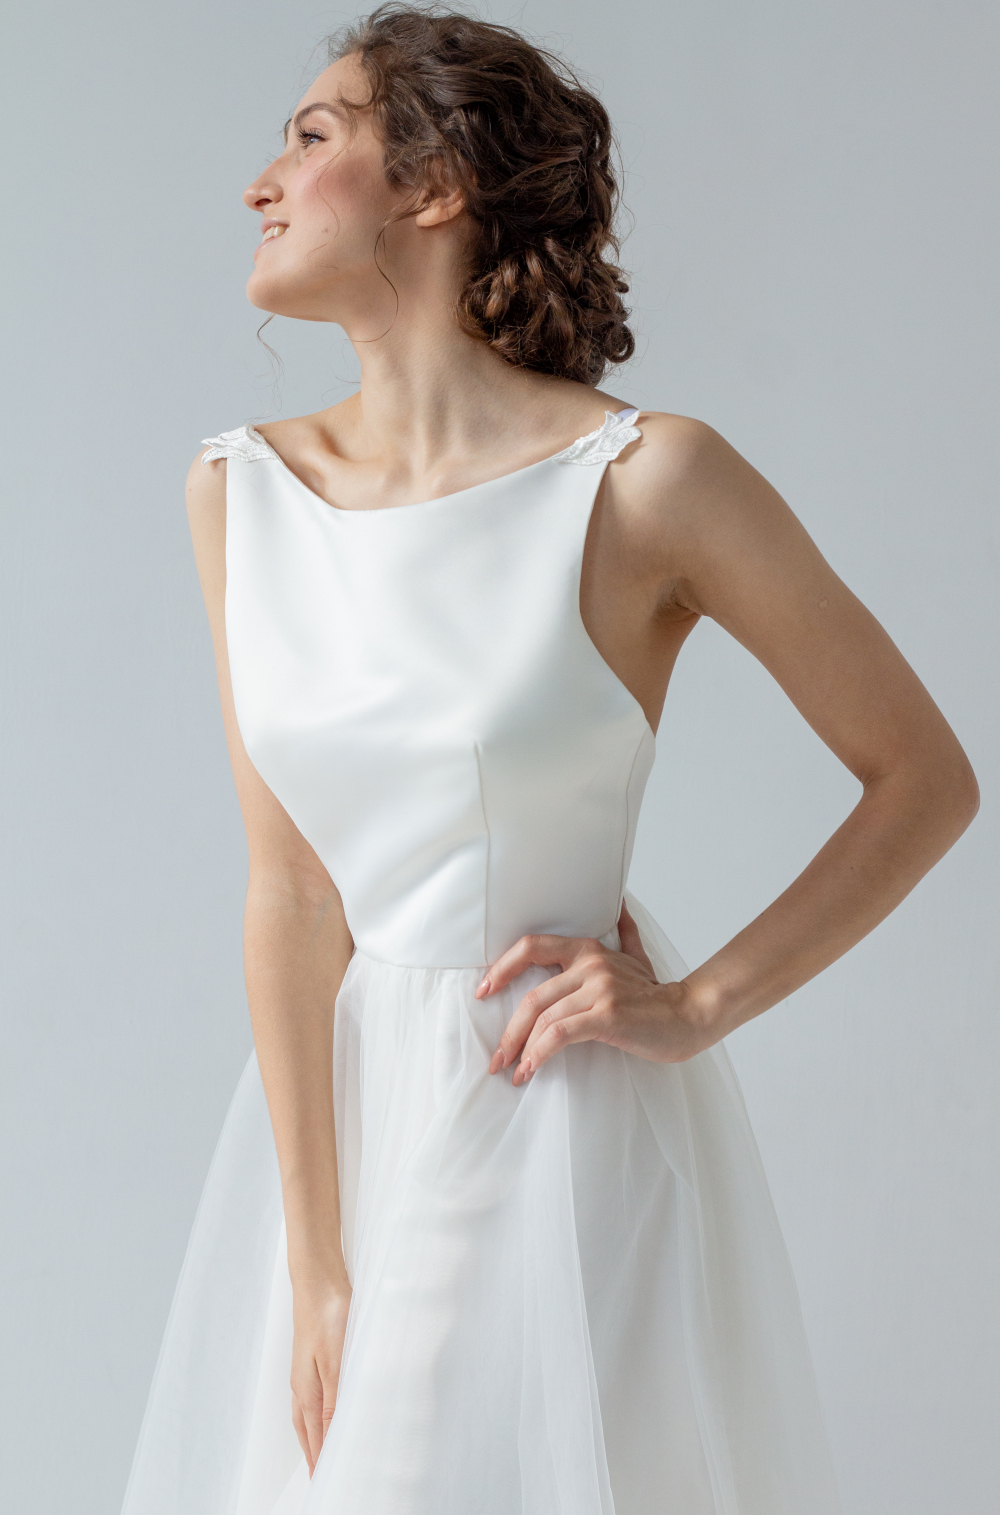 Свадебное воздушное платье оттенка Айвори с открытой спинкой. Воздушная фатиновая юбка струится, как облако. Лаконичный крой и легкость в образе невесты. Размер 42-44.